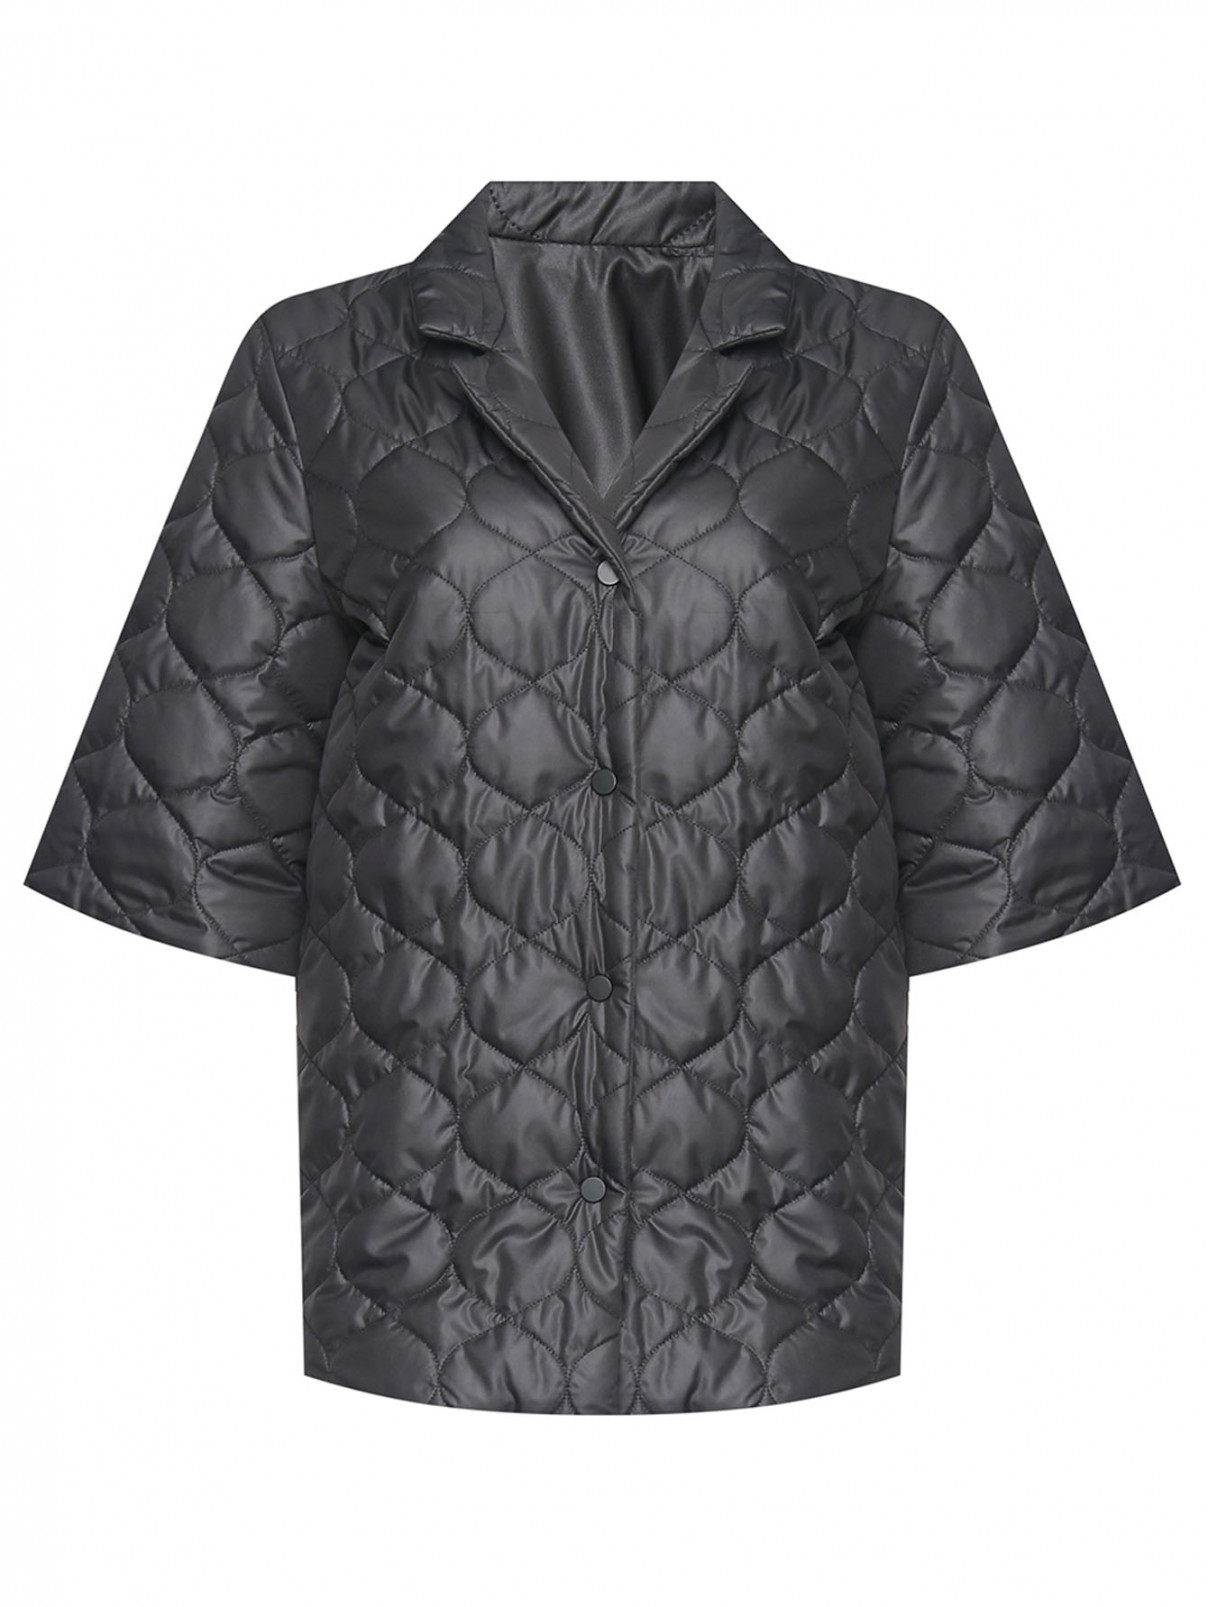 Стеганая куртка с коротким рукавом Marina Rinaldi  –  Общий вид  – Цвет:  Черный